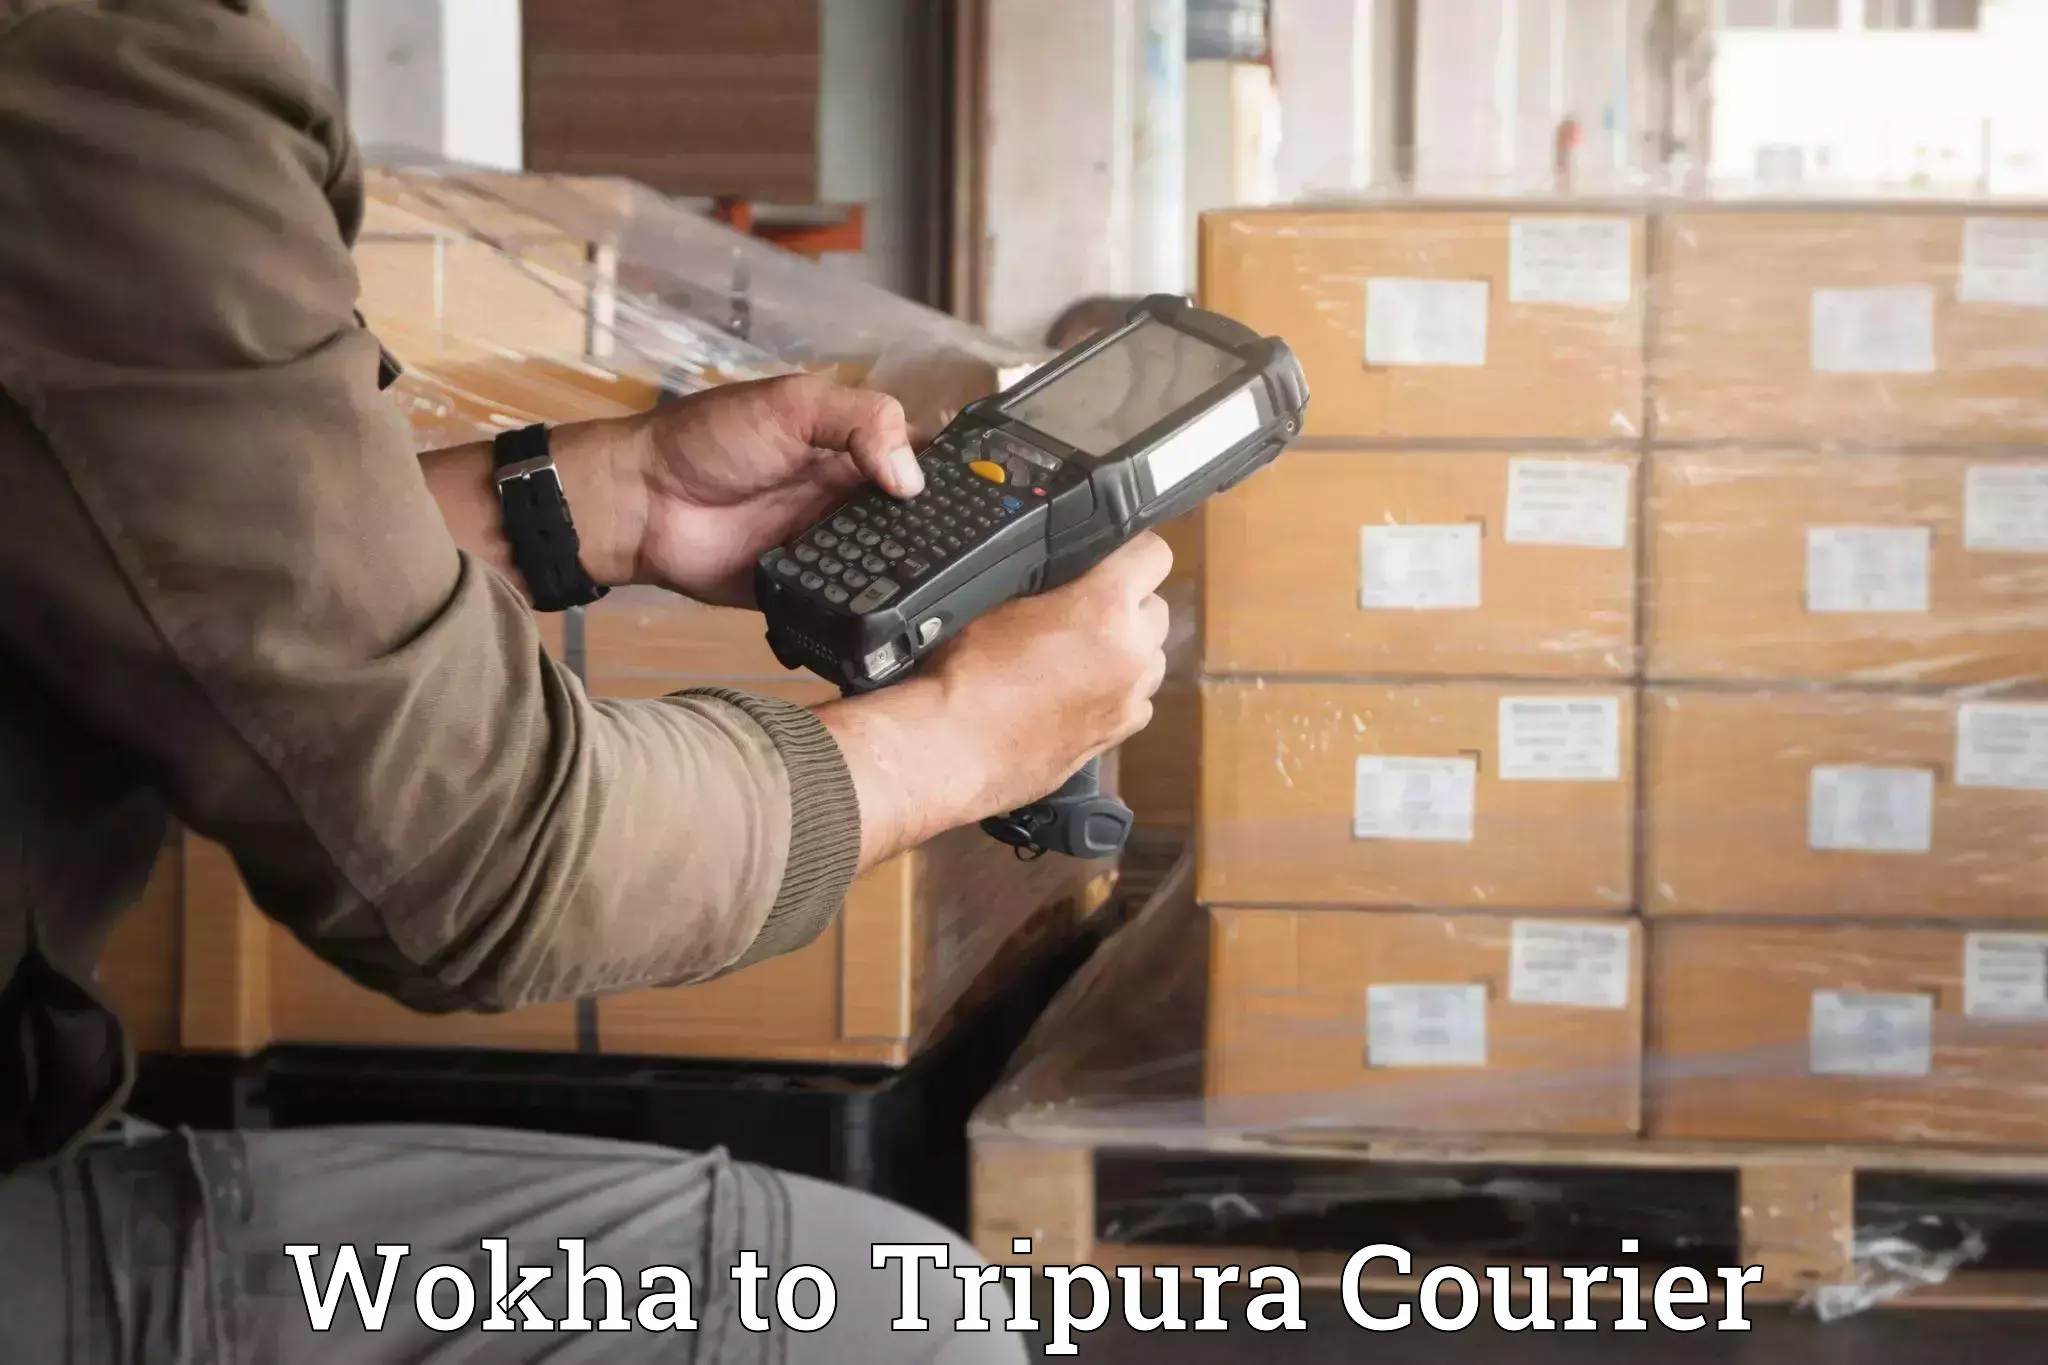 Professional moving assistance Wokha to Tripura